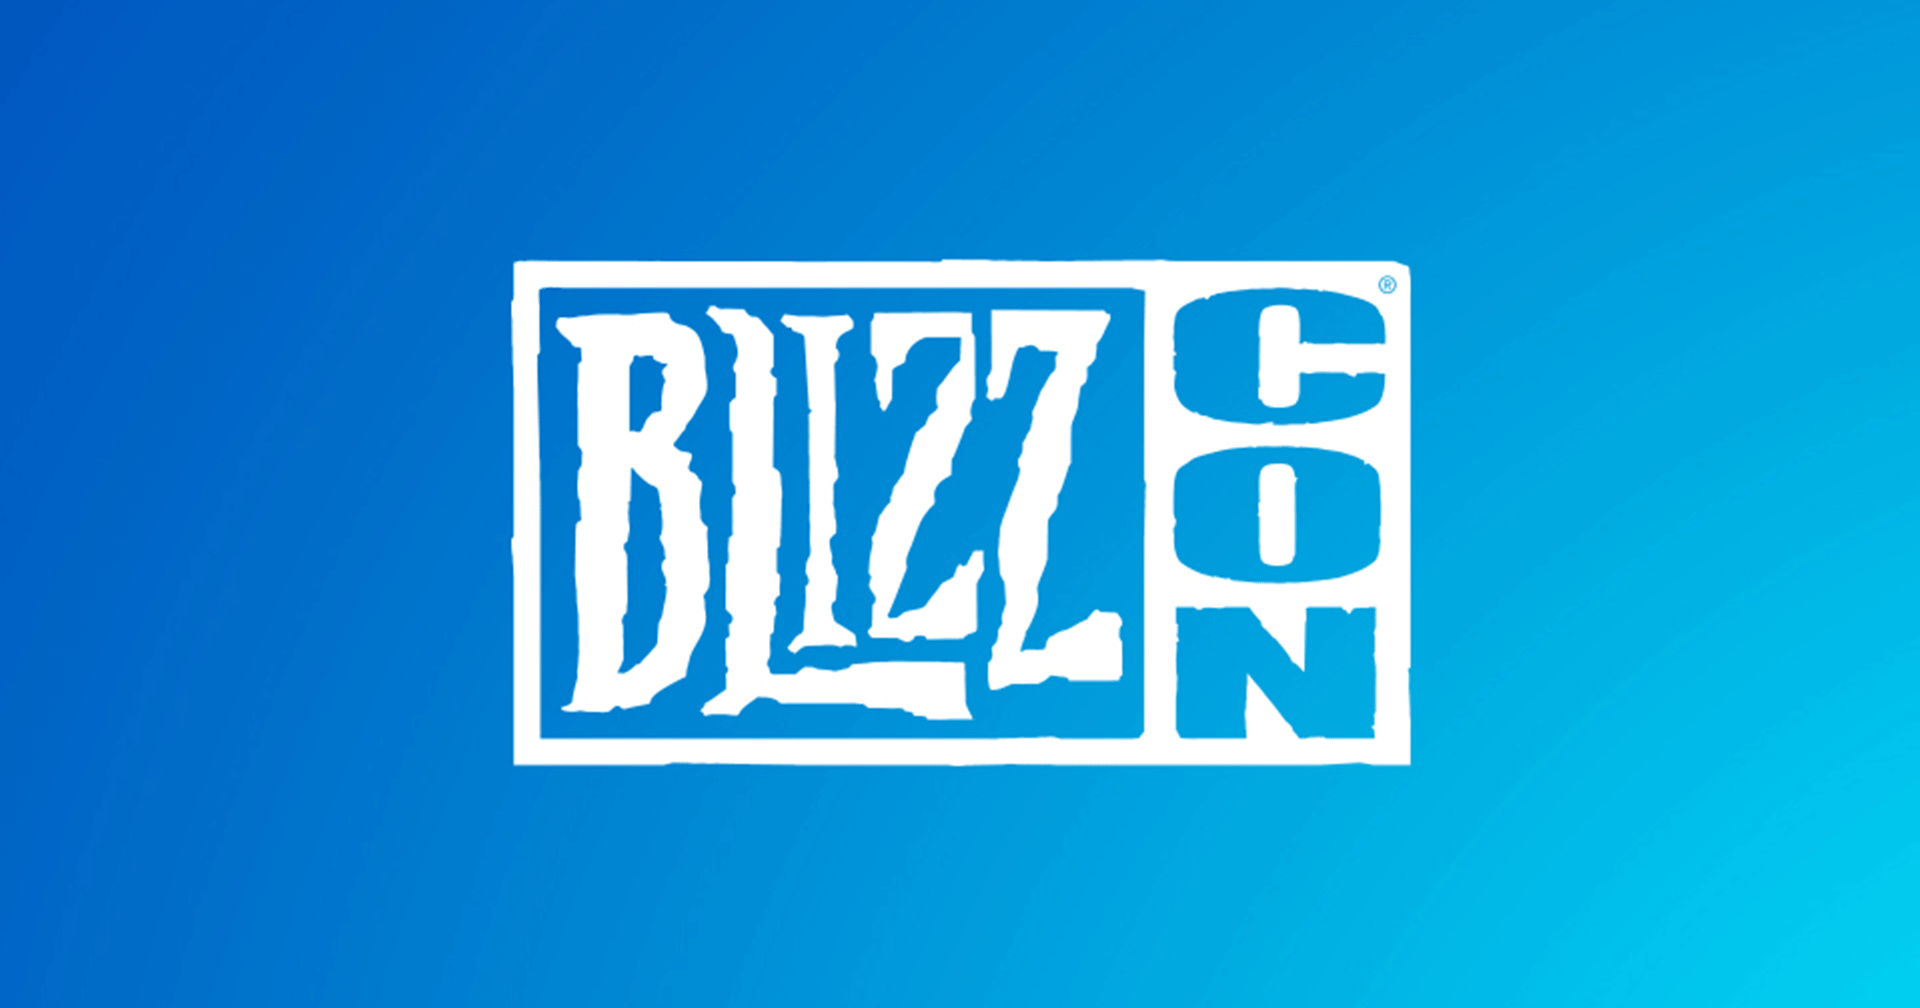 Blizzard ประกาศยกเลิกงาน BlizzCon ในปีนี้